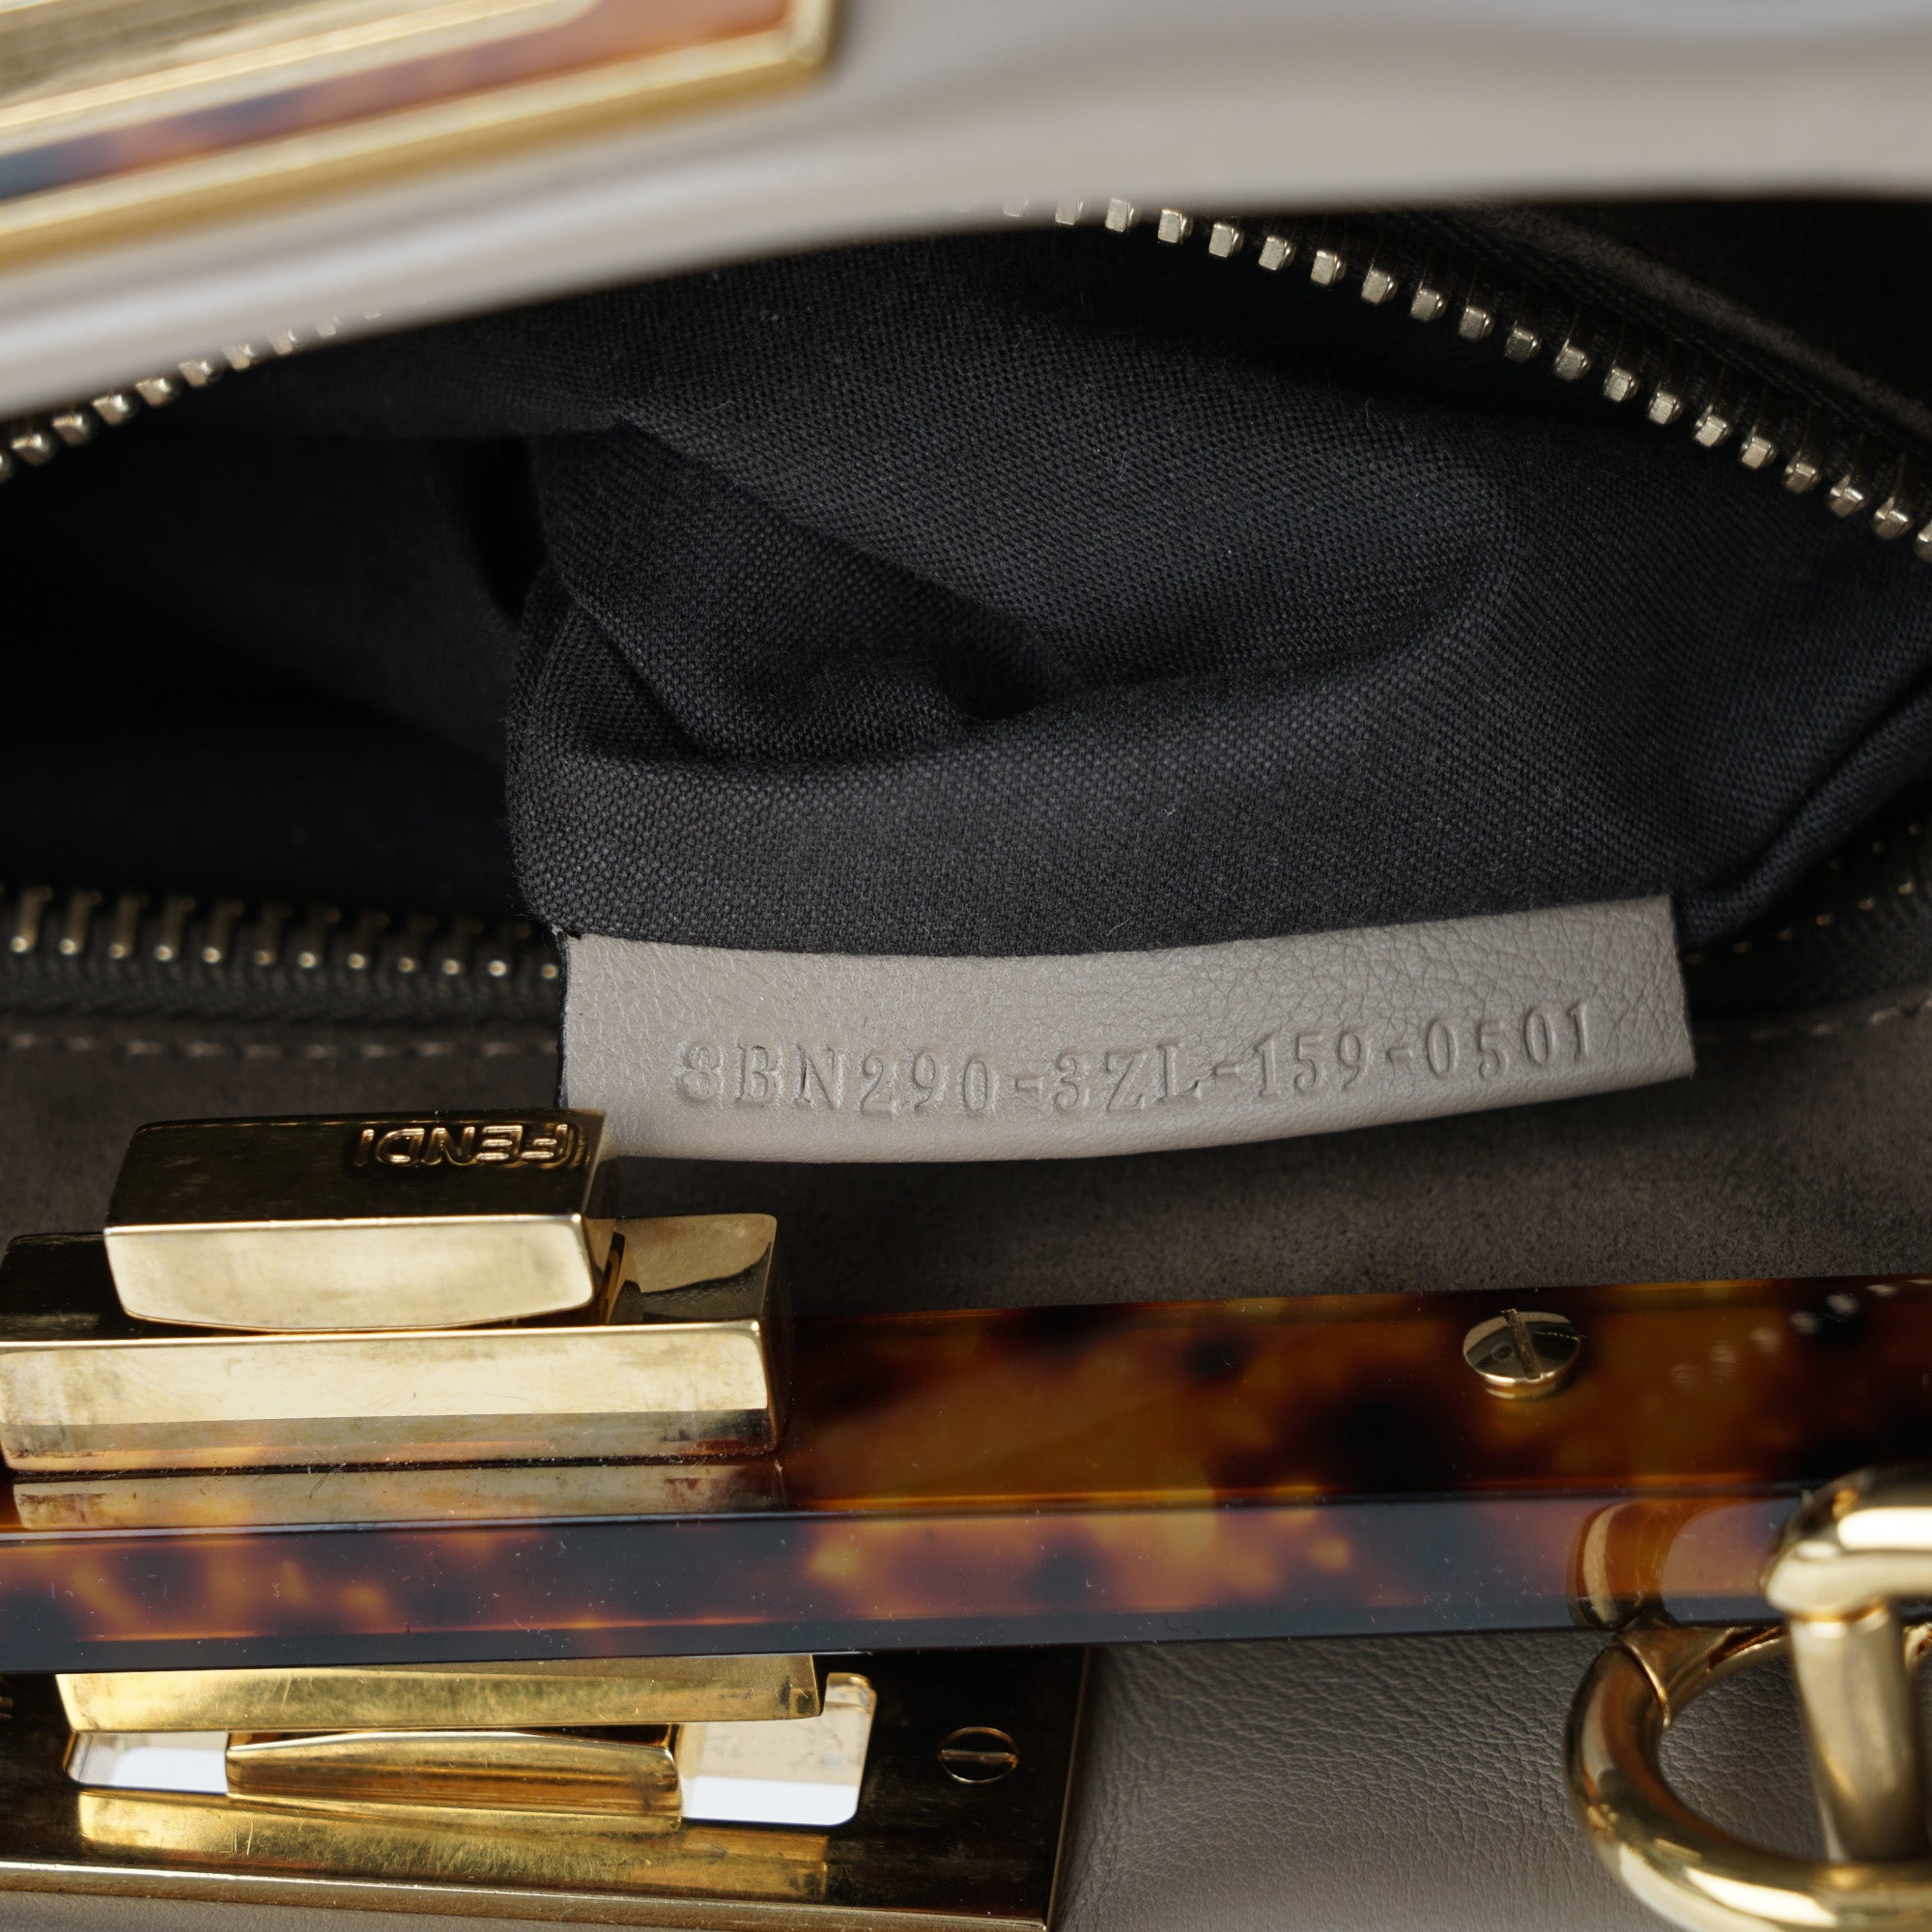 Peekaboo ISeeU Medium Handbag - FENDI - Affordable Luxury image